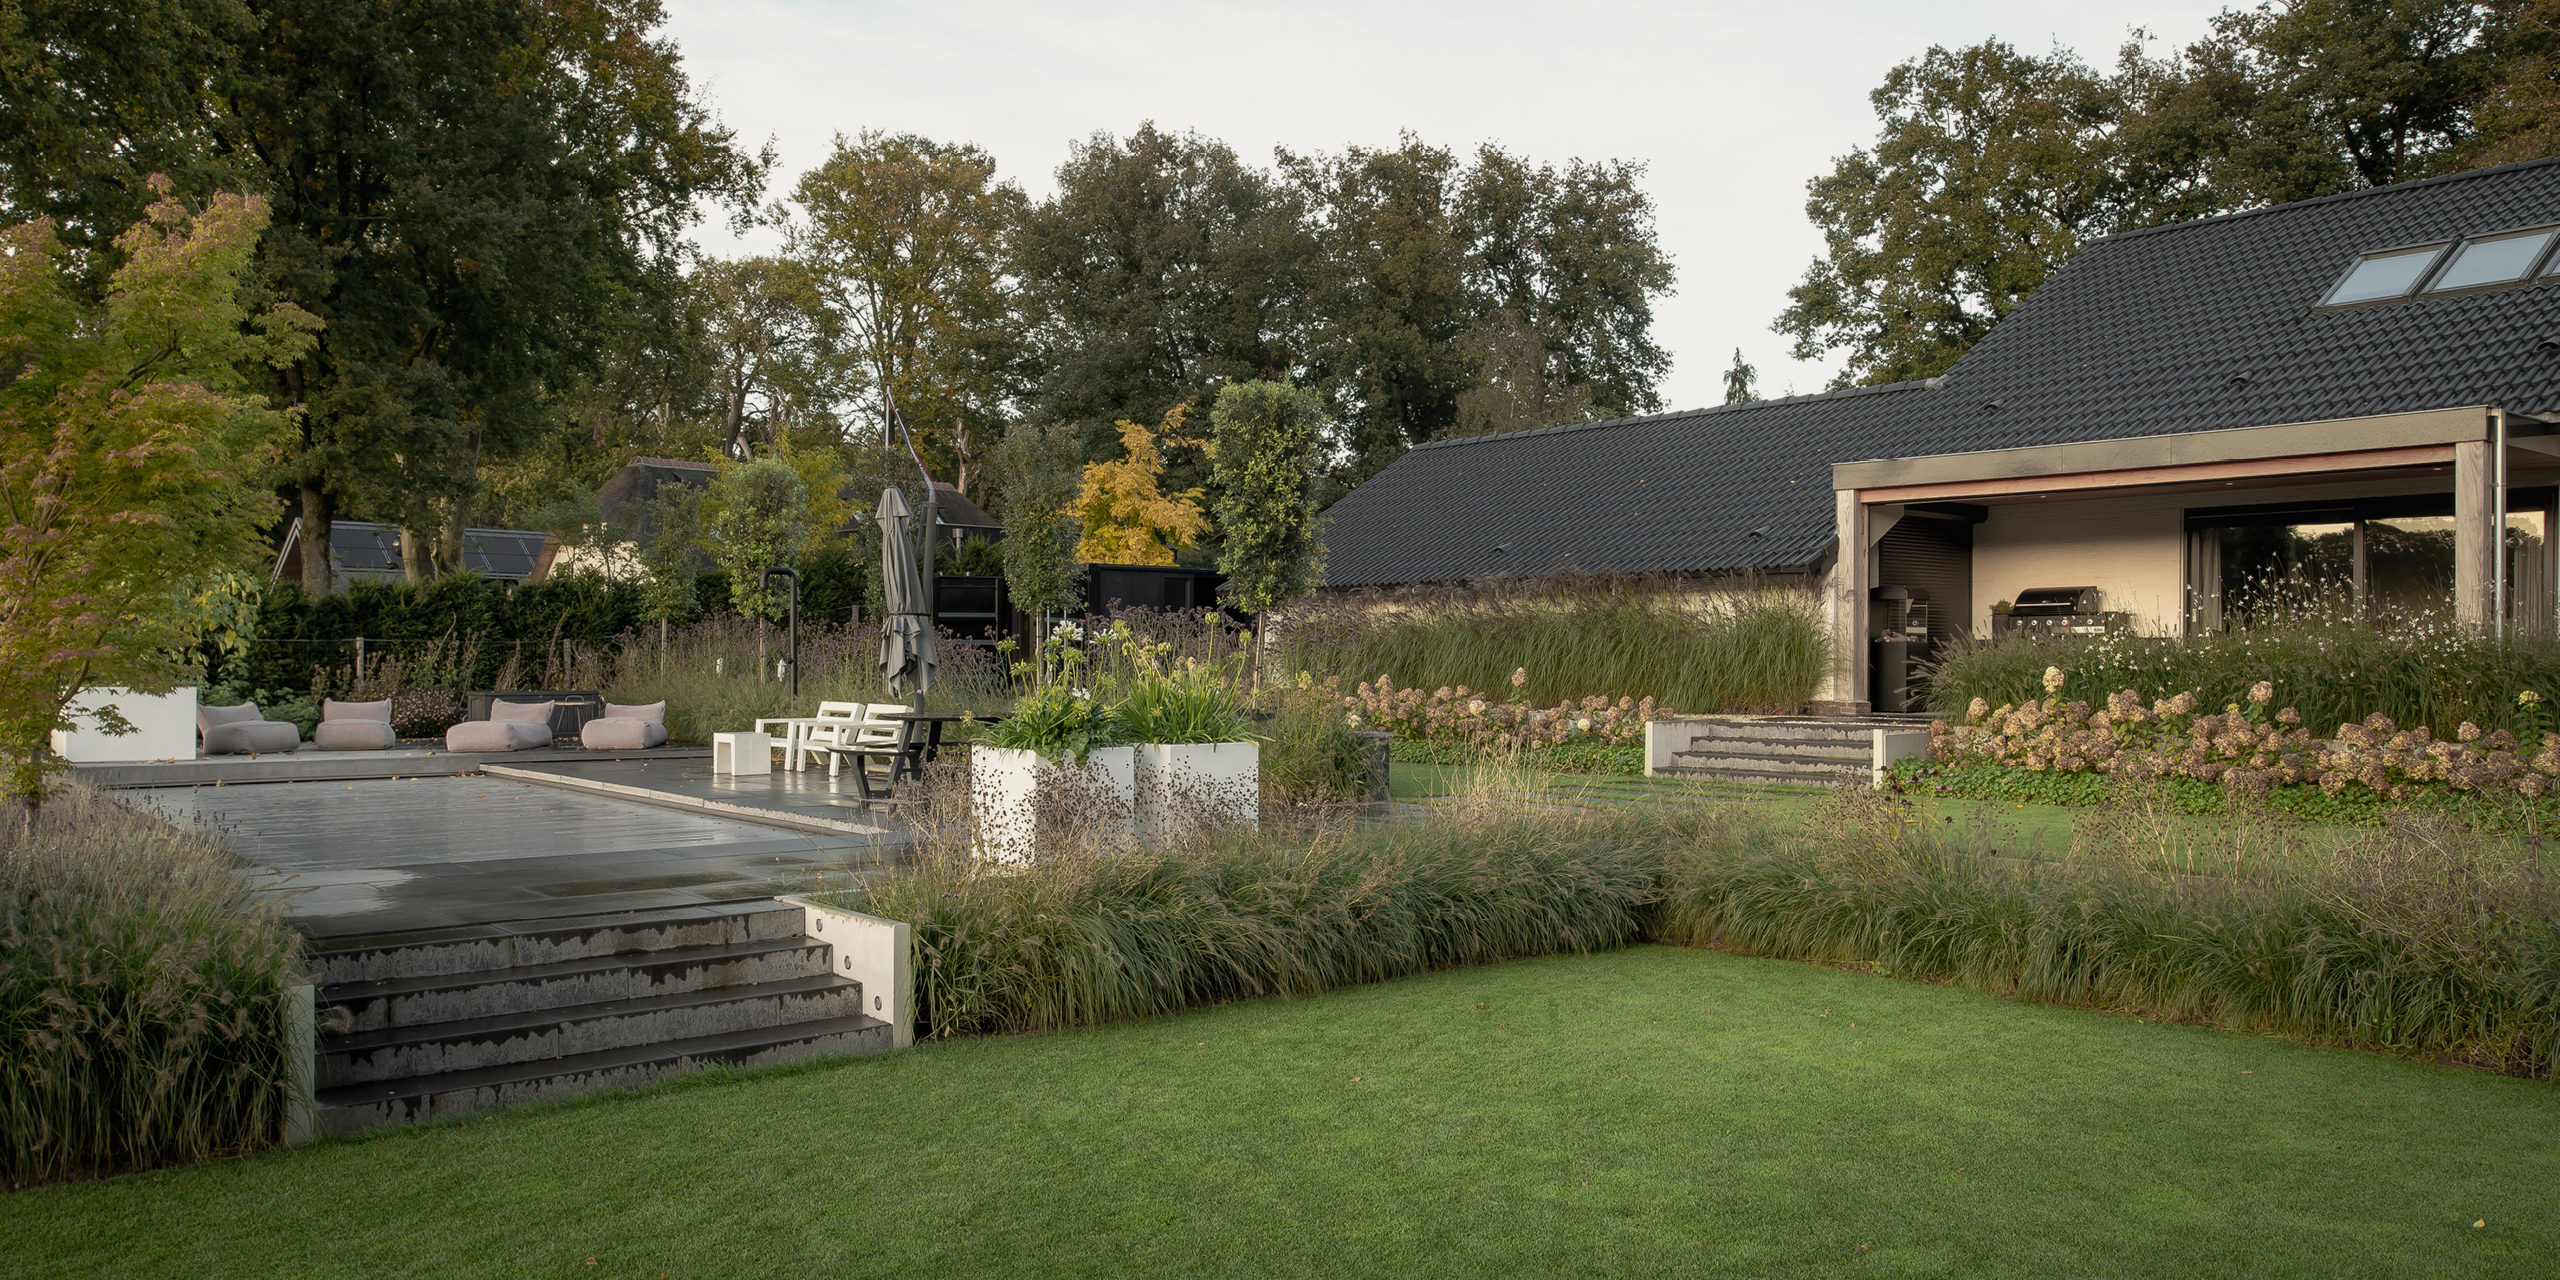 Tuin van Buytengewoon in Hoog Soeren met gazon, traptreden, terras, zwembad en veranda.